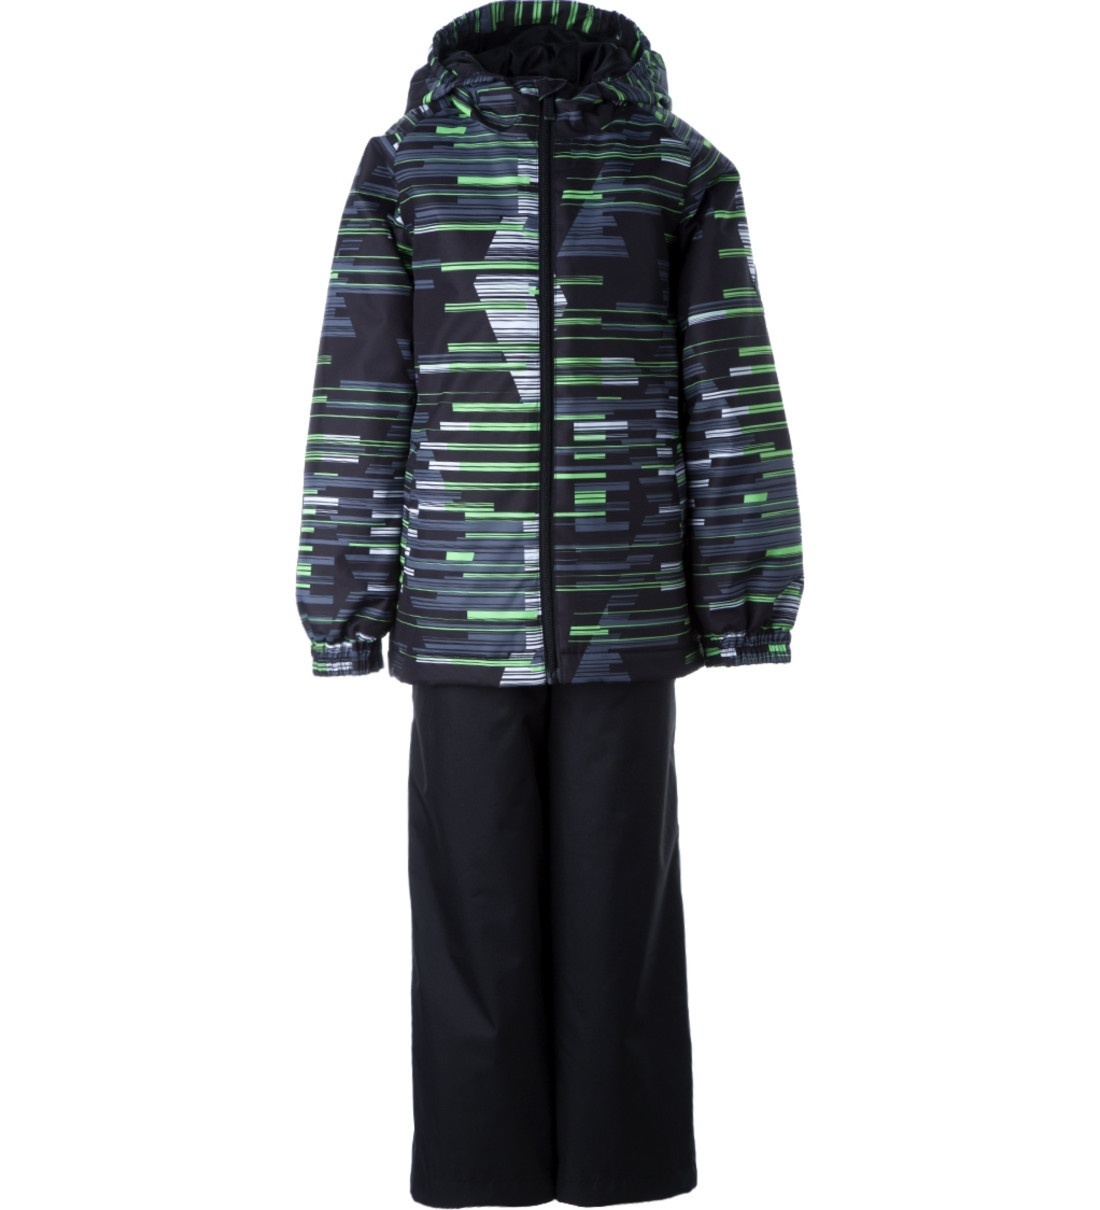 Комплект верхней одежды детский Huppa REX, салатовый, черный, 152